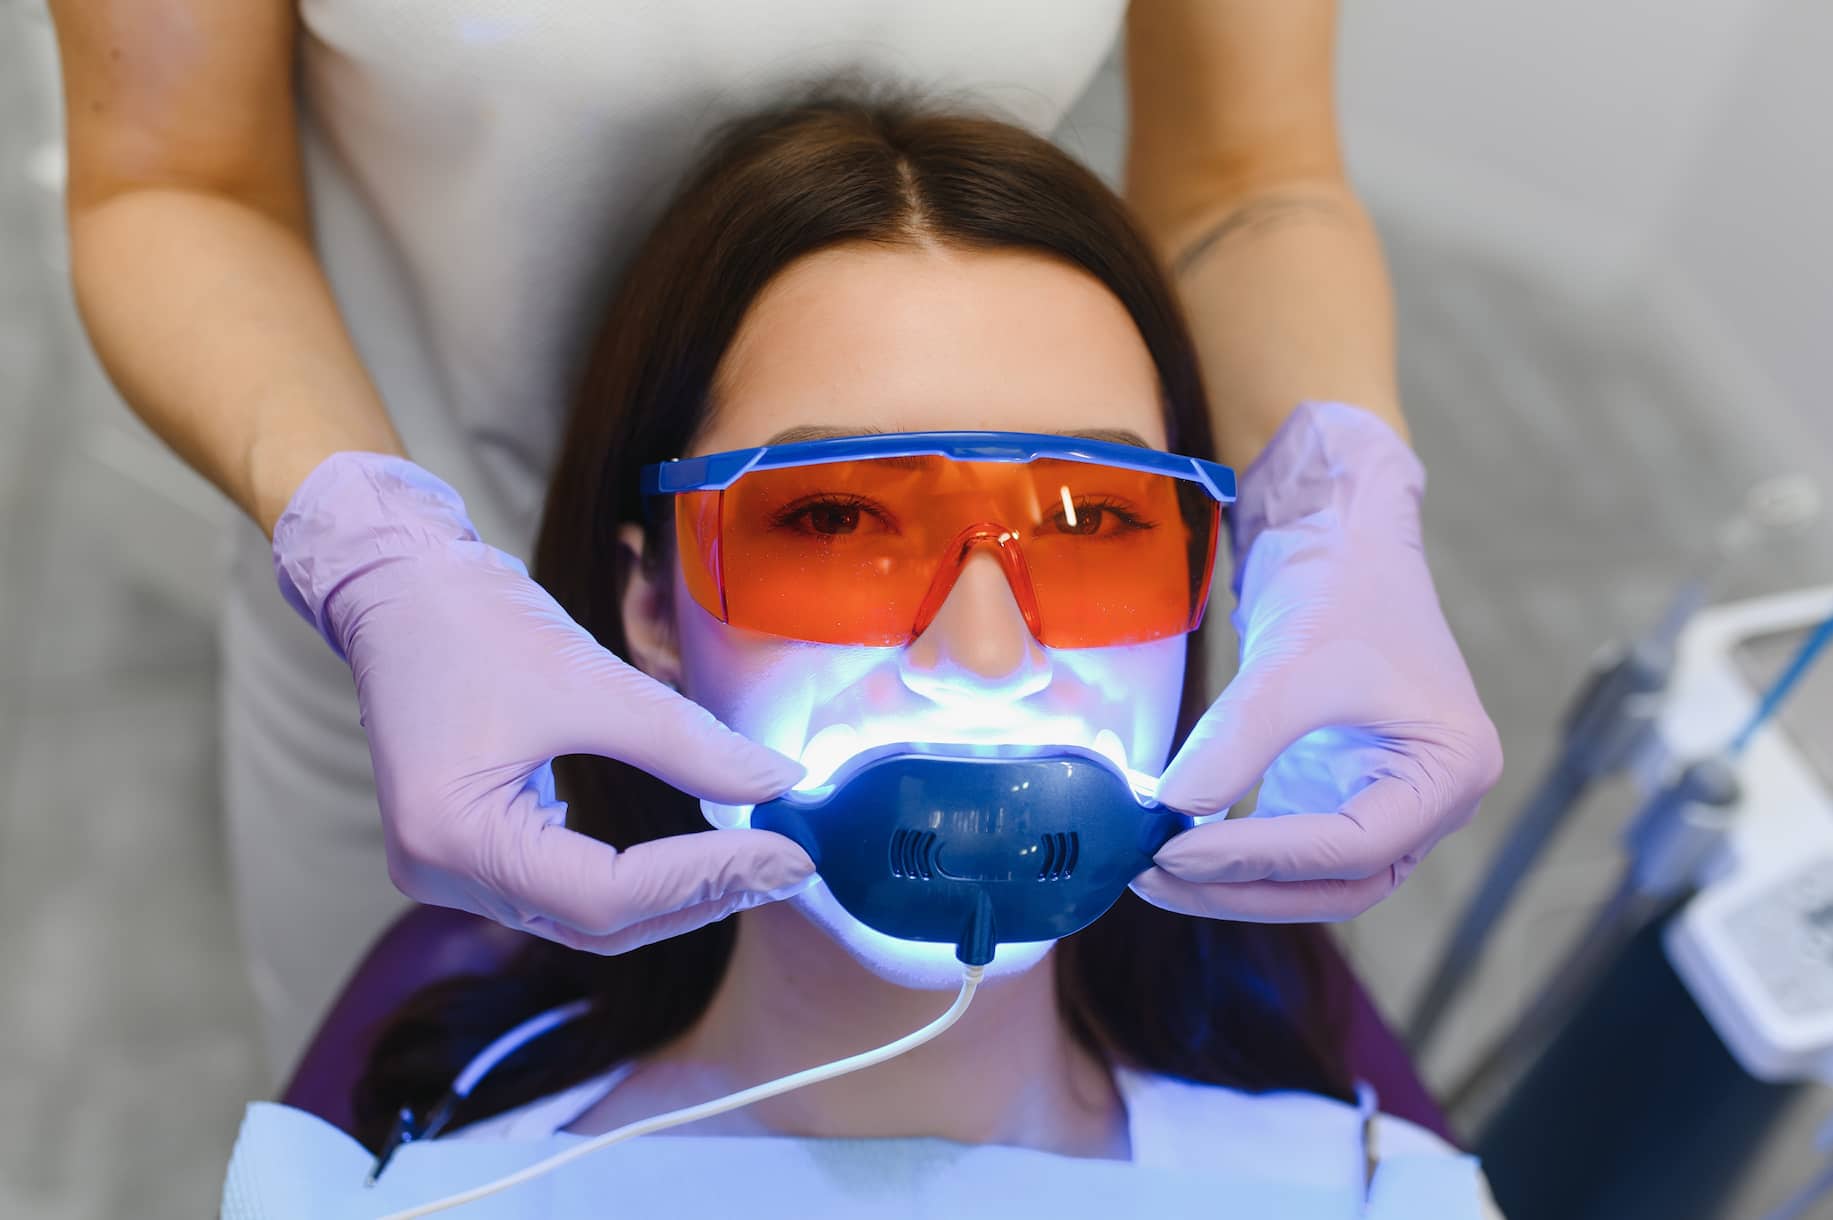 Turkiye laser teeth whitening procedure